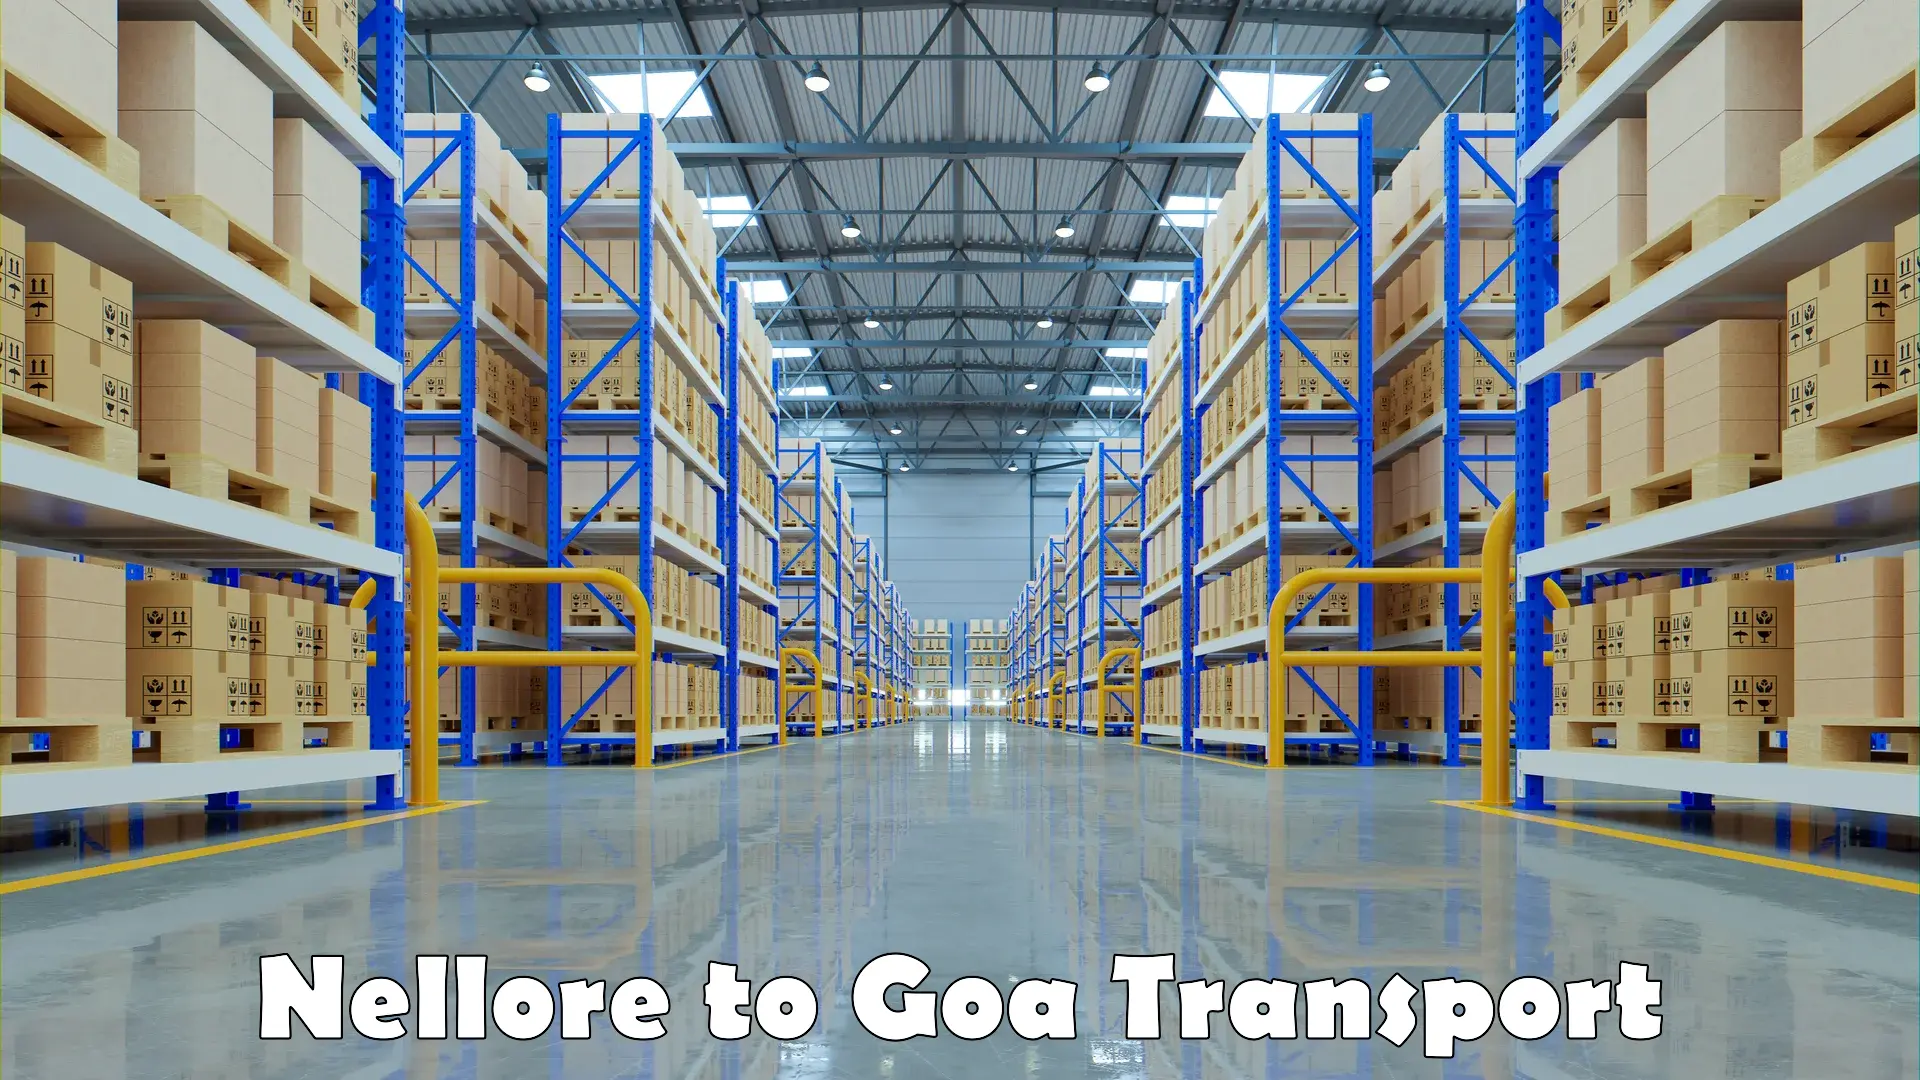 Online transport service Nellore to Goa